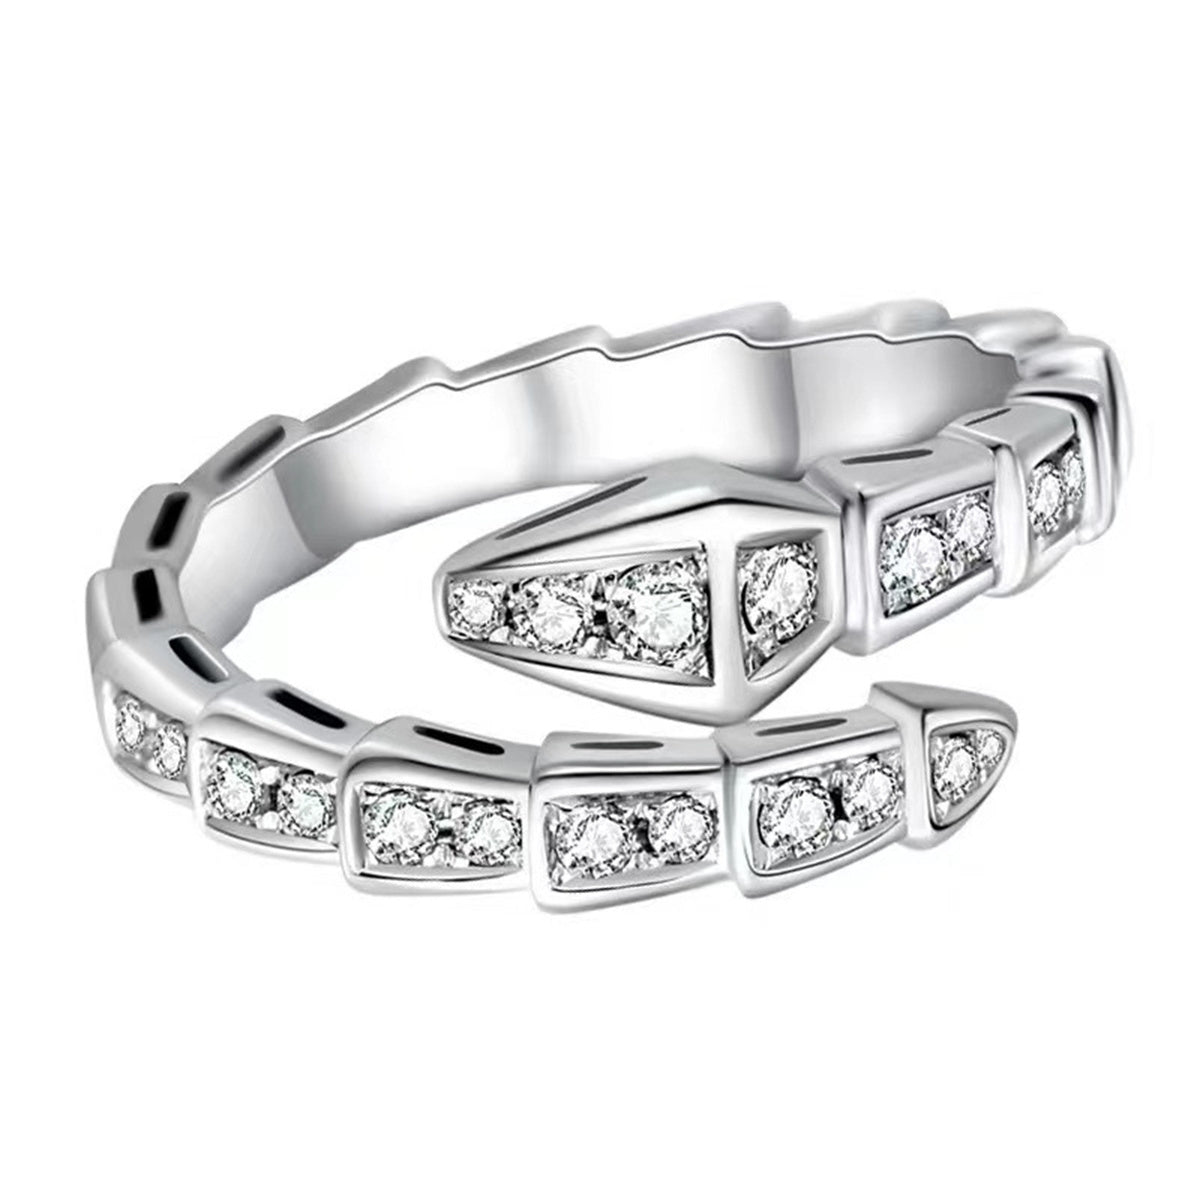 Diamond-studded Open Snake Bone Index Finger Ring for Women Girls Jewelry